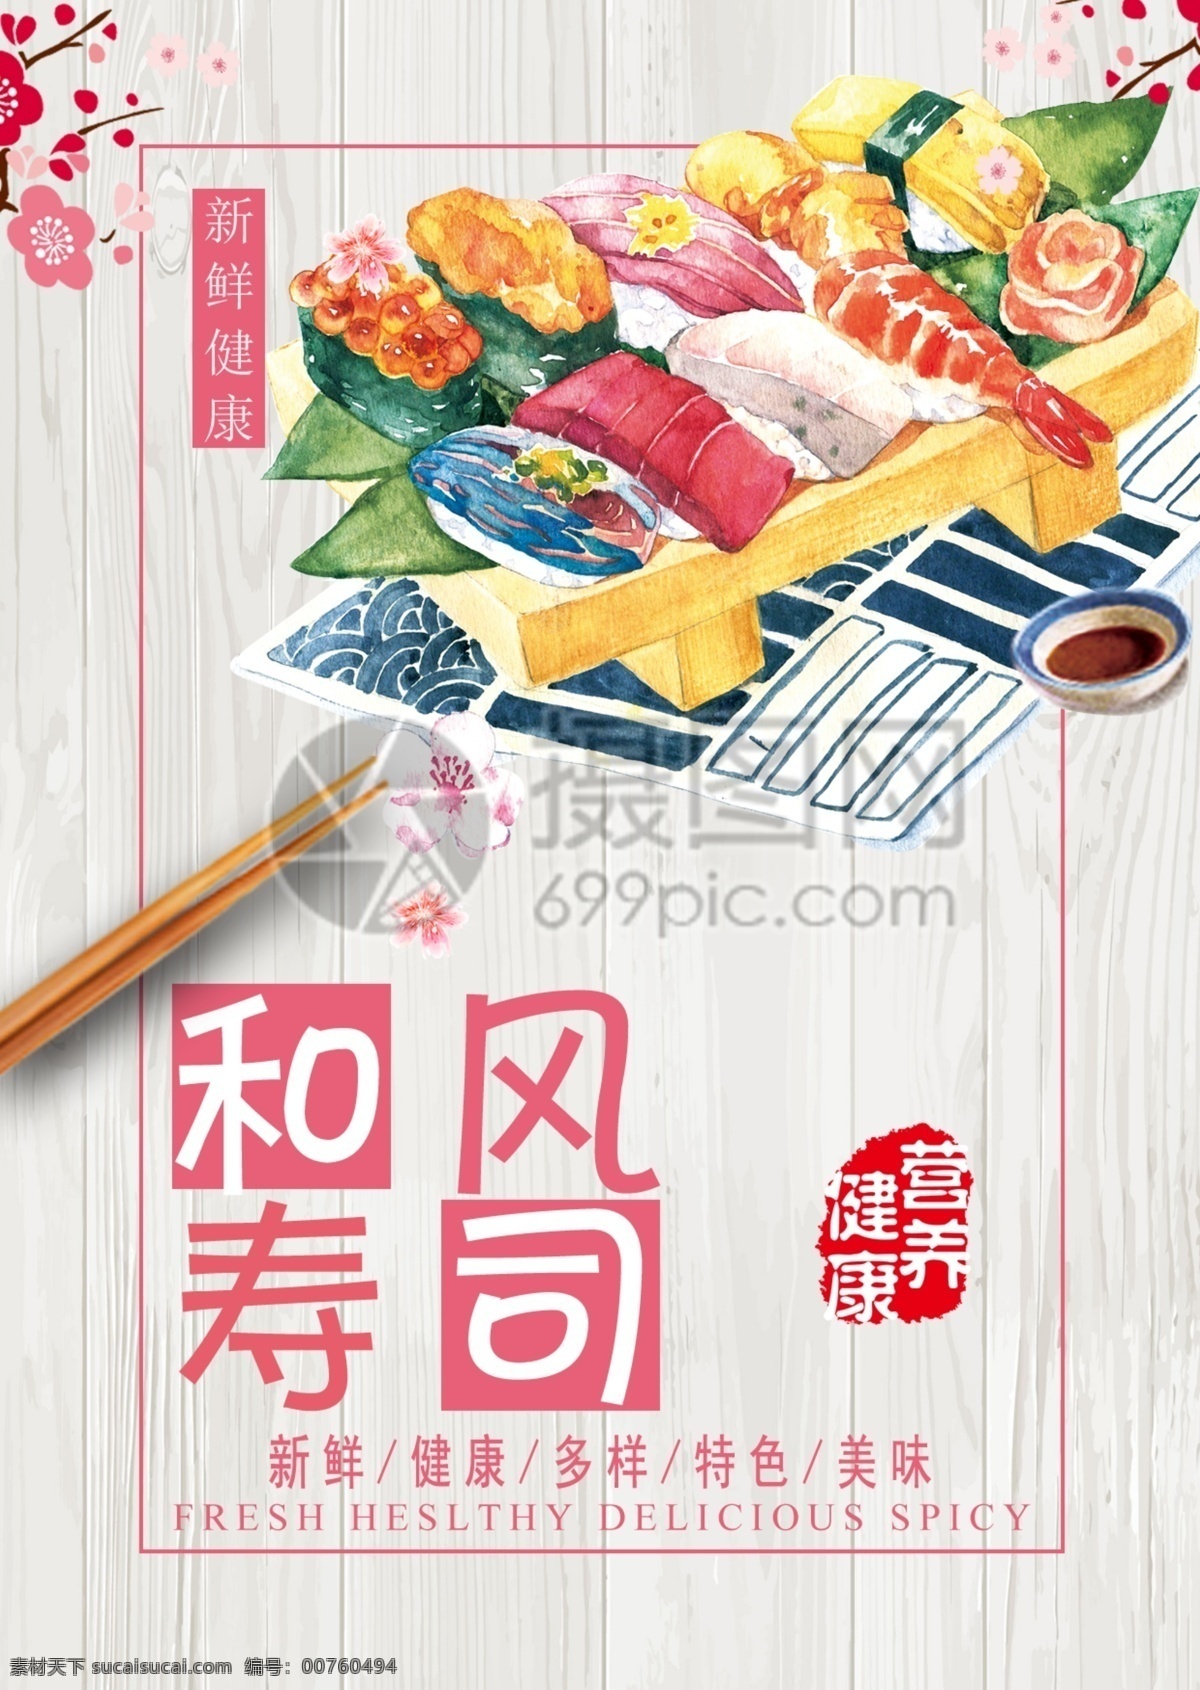 寿司店宣传单 日本料理 日式 寿司 寿司店宣传 宣传单 宣传单设计 夏天 简约 简洁 大气 活力